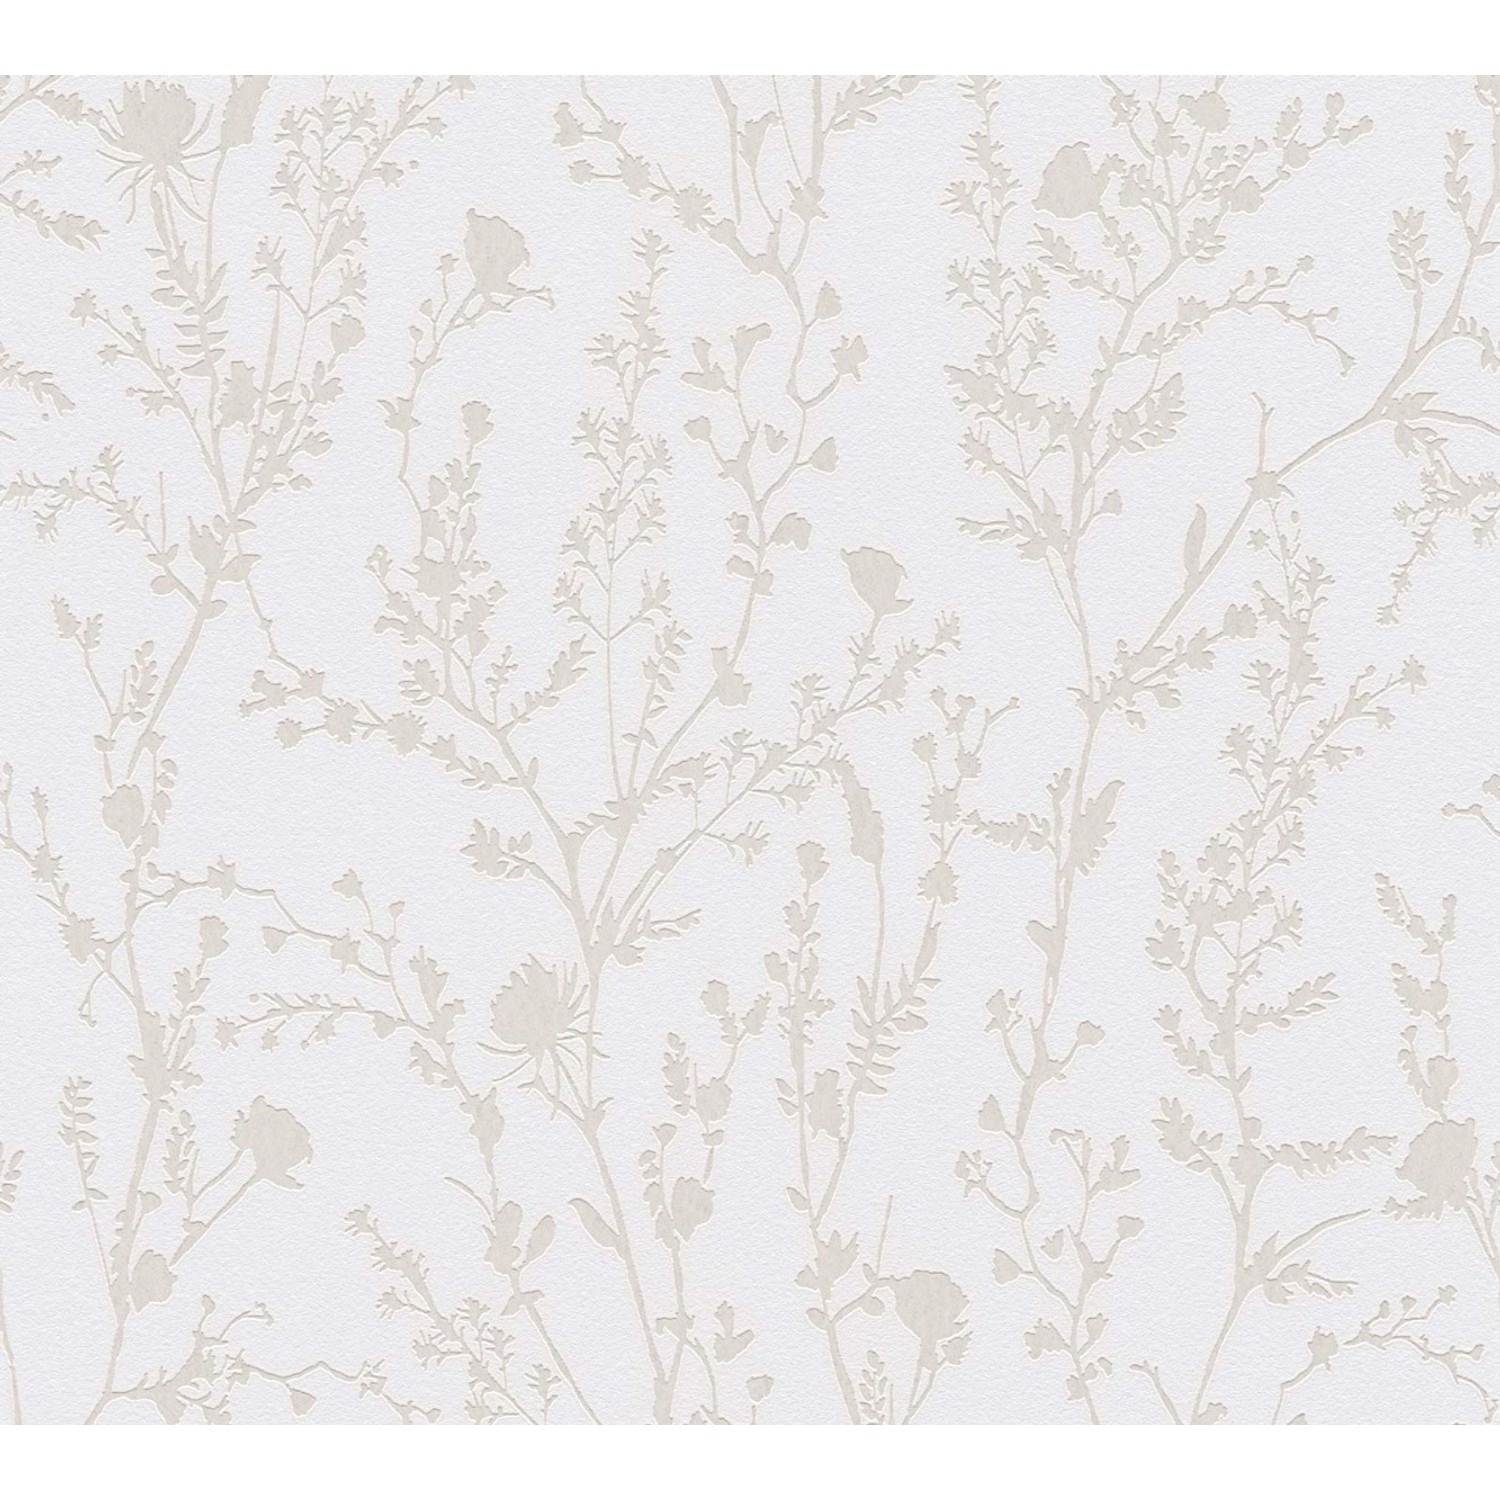 Bricoflor Wildblumen Tapete mit Perlmutt Effekt Moderne Landhaus Blumentapete Weiß Beige Florale Vliestapete für Schlafzimmer von Bricoflor